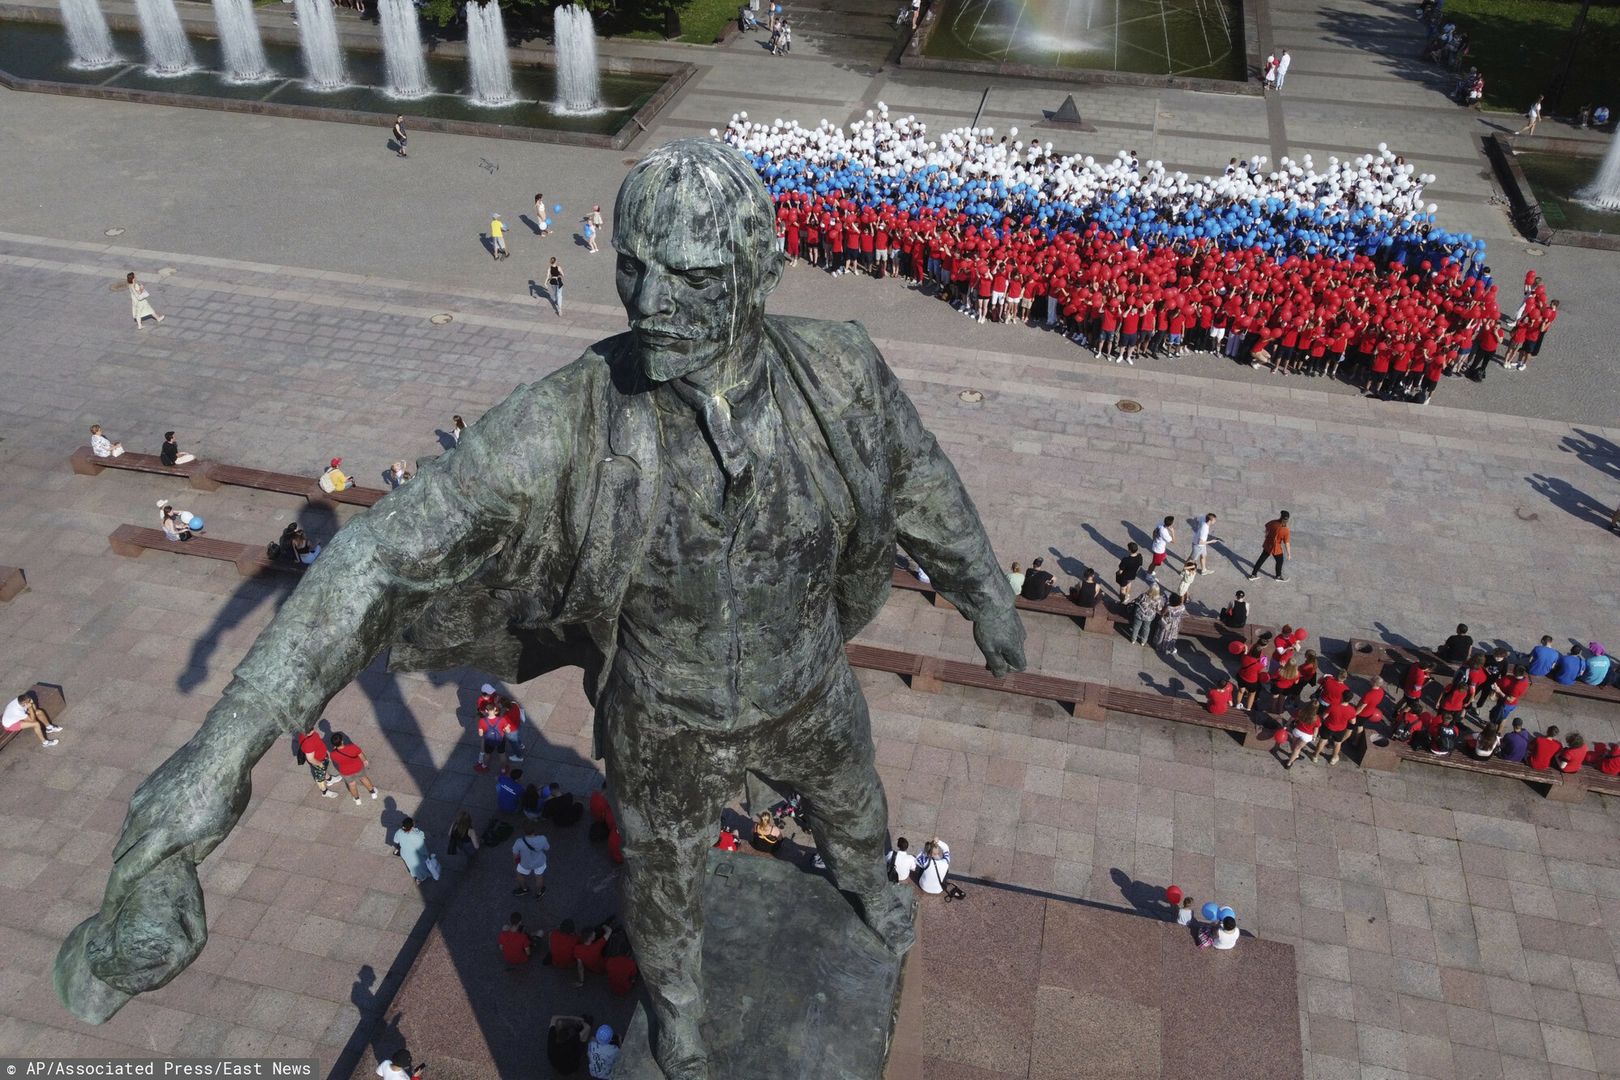 Członkowie prorządowych rosyjskich organizacji młodzieżowych ustawili się w kształt państwa rosyjskiego pod pomnikiem Lenina w ramach przygotowań do Dnia Flagi, który przypadał 22.08.2022 r. 